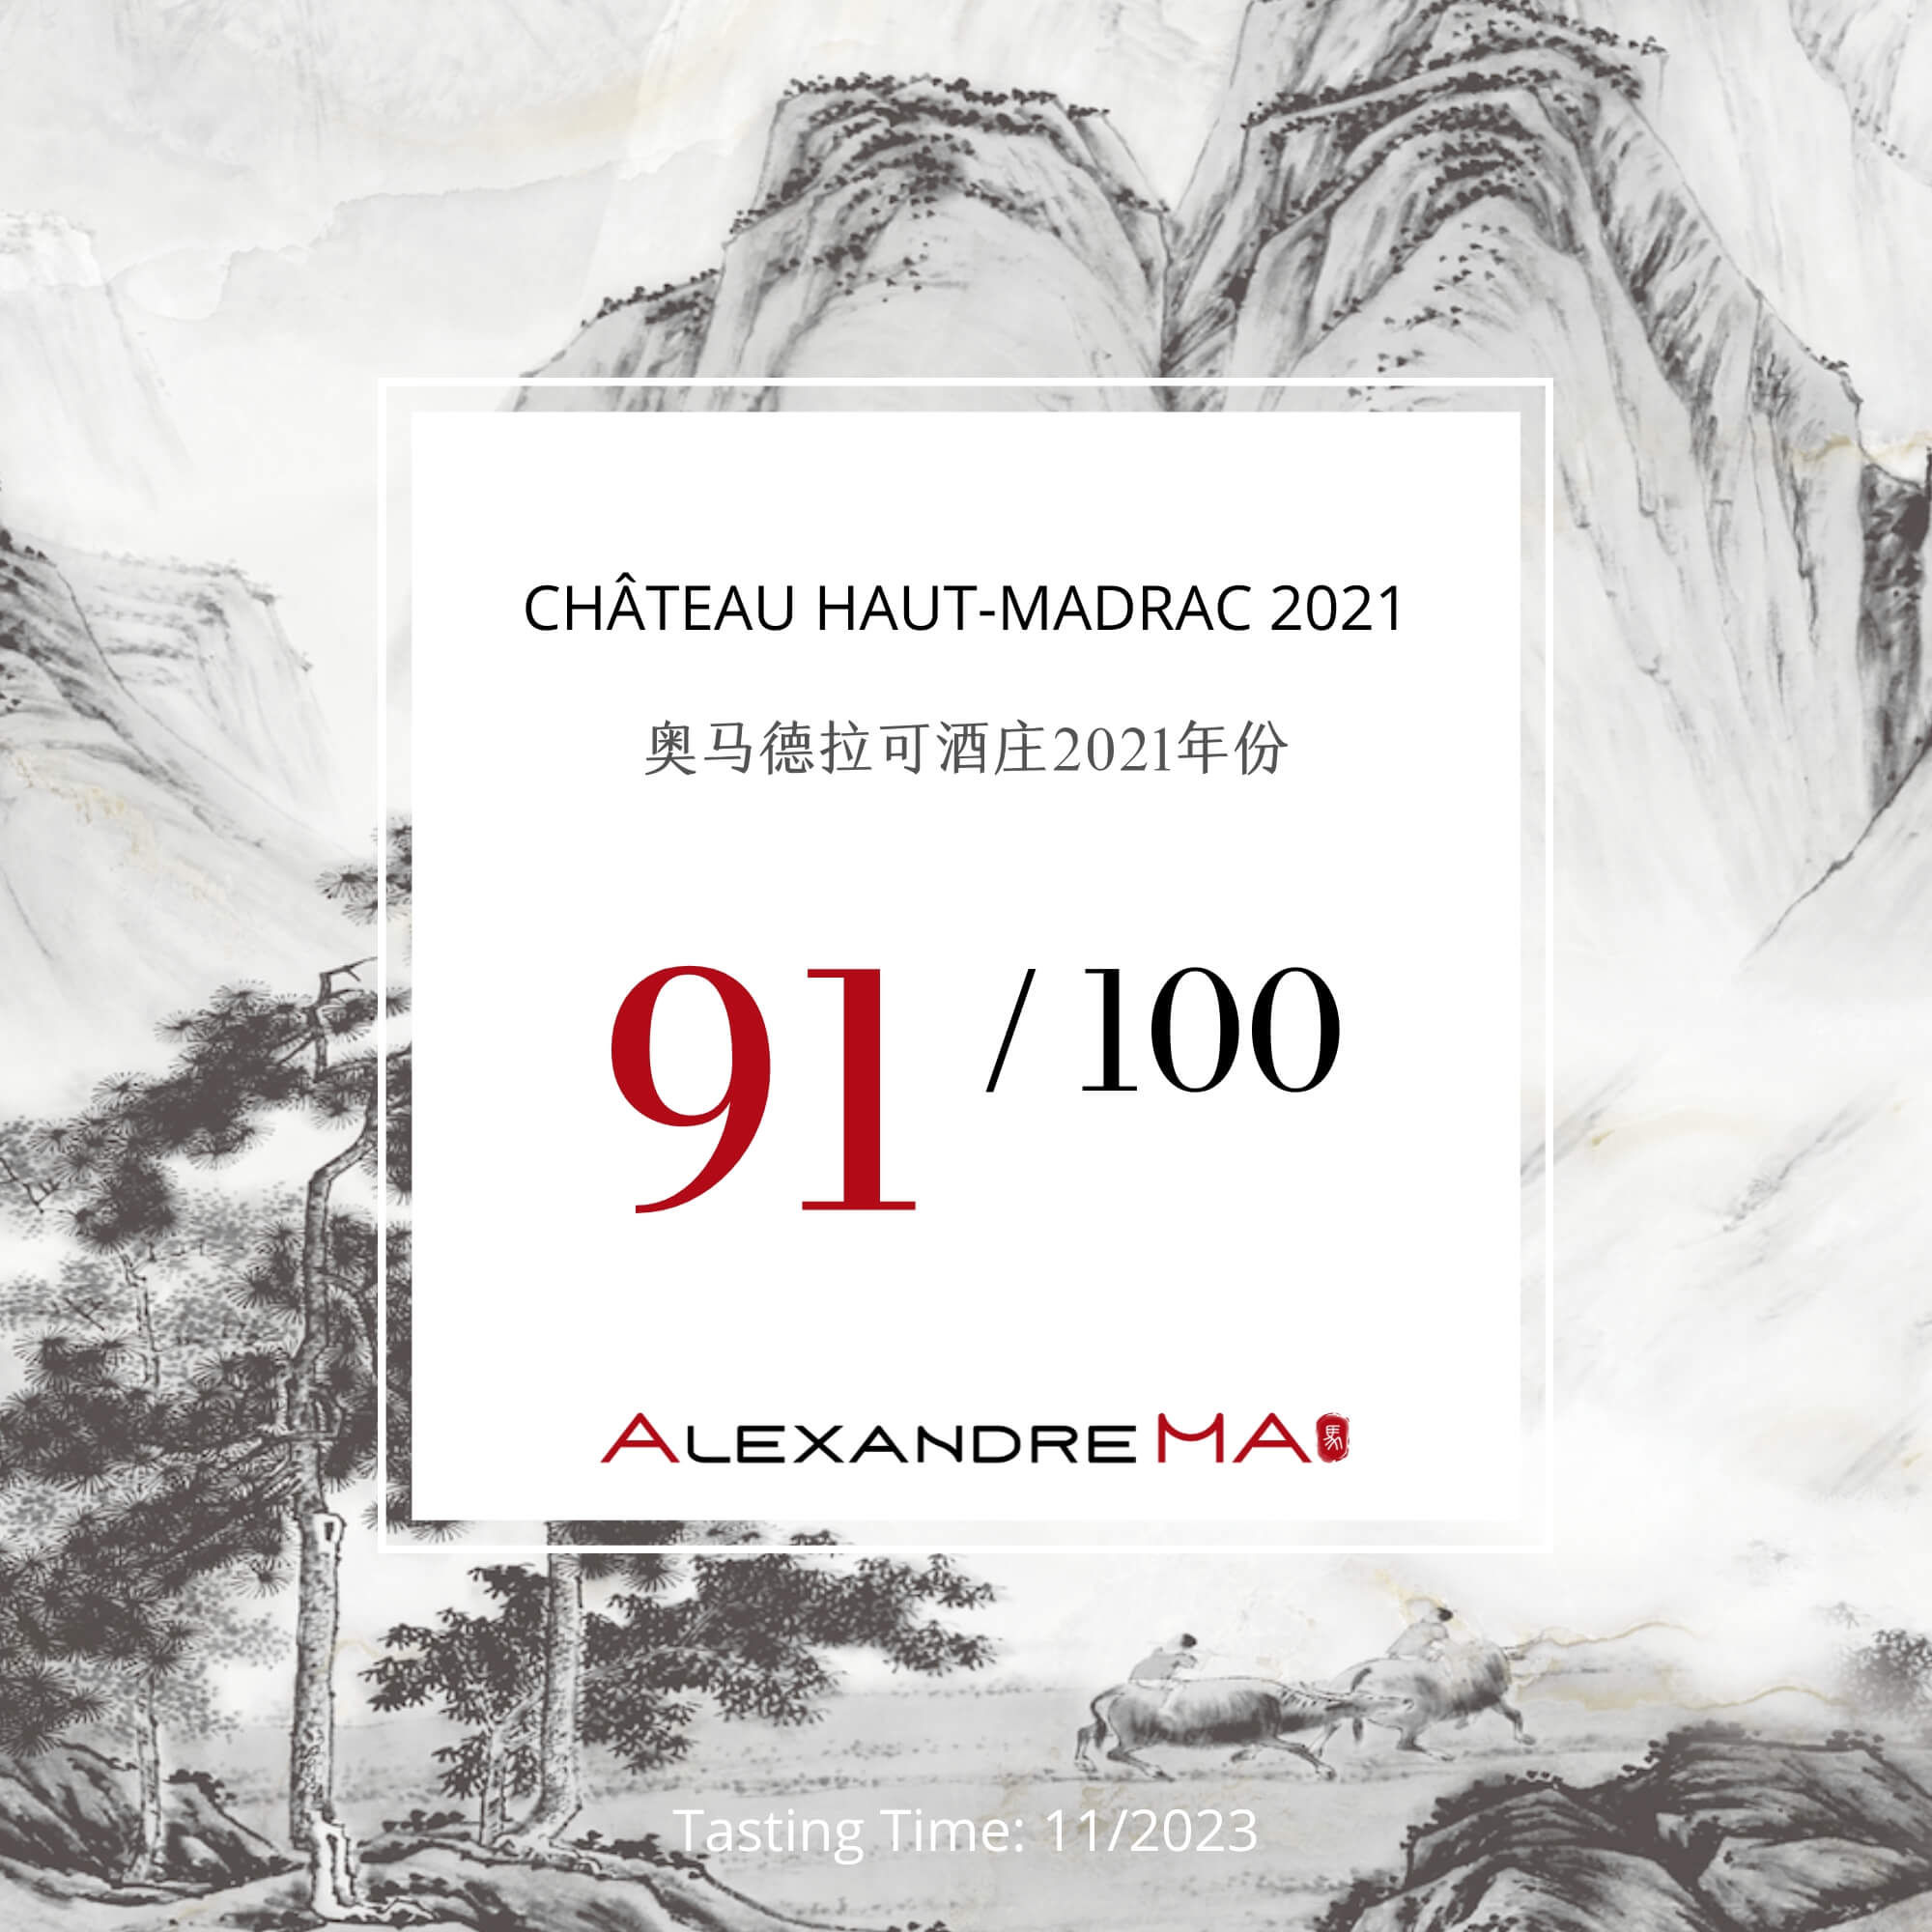 Château Haut-Madrac 2021 - Alexandre MA